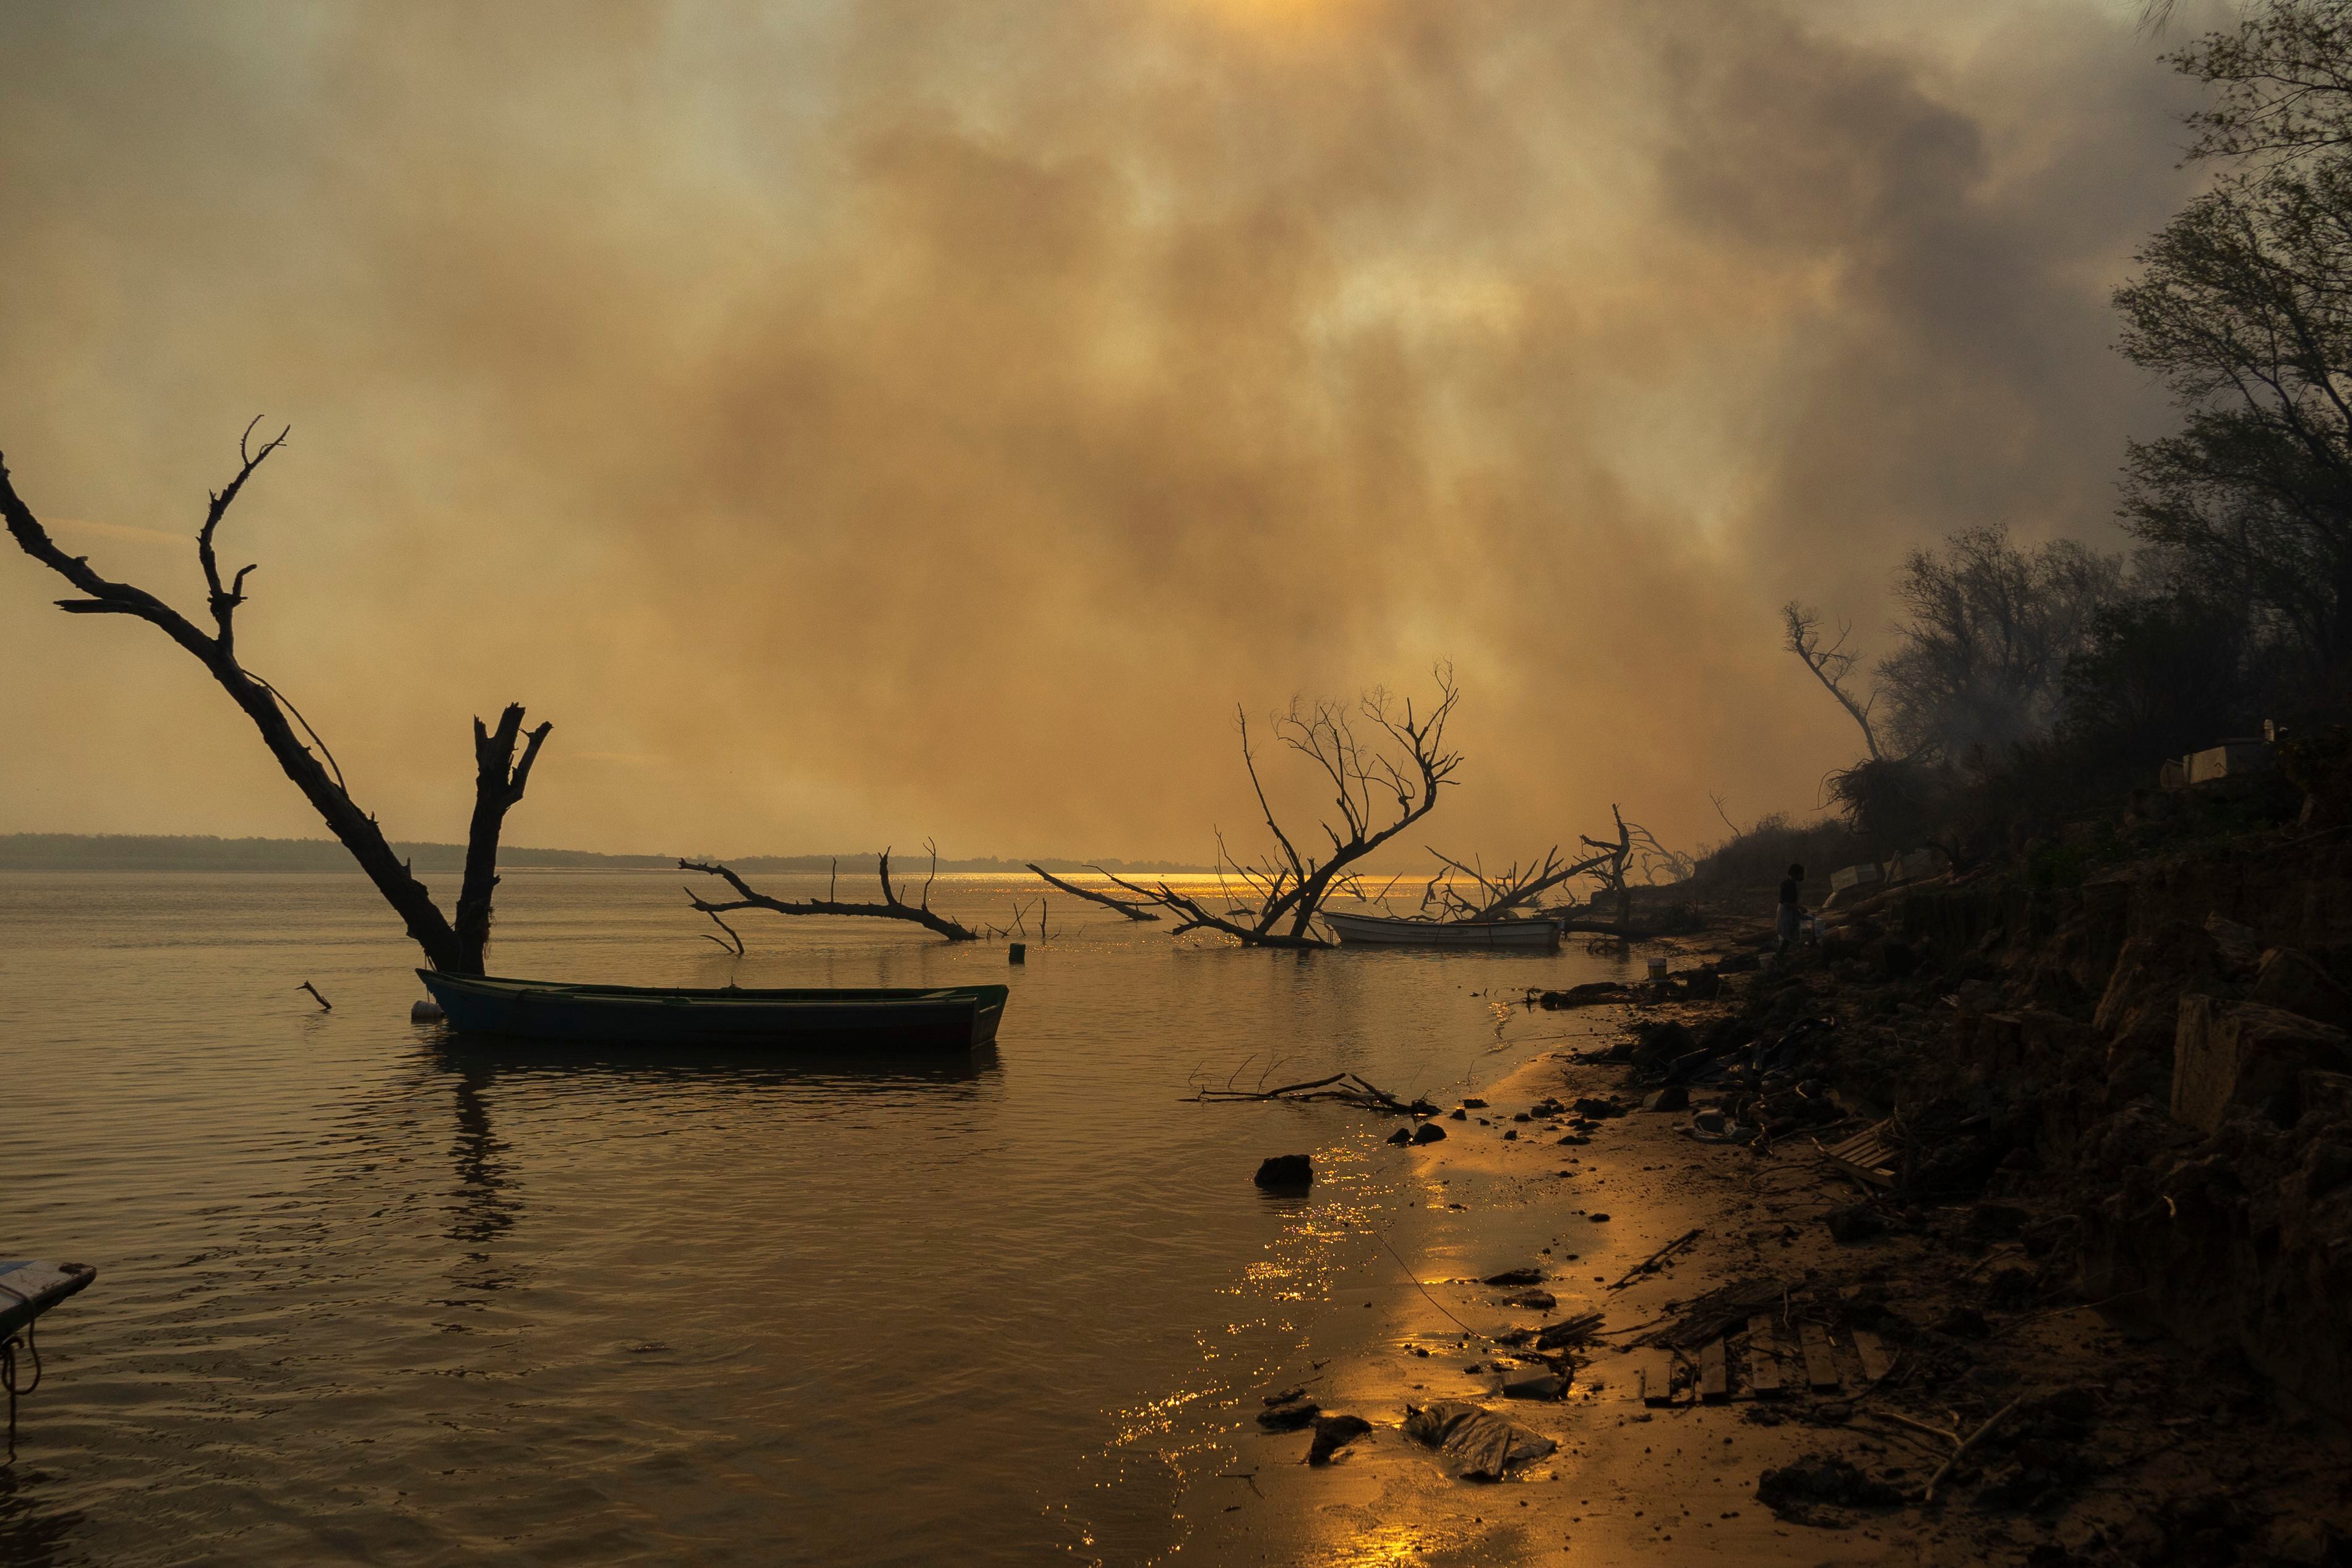 O fogo avança sobre o leito do rio no delta do Paraná. De acordo com o Greenpeace, foram registrados 3.712 focos entre janeiro e meados de maio —época do ano em que geralmente há menos incêndios.